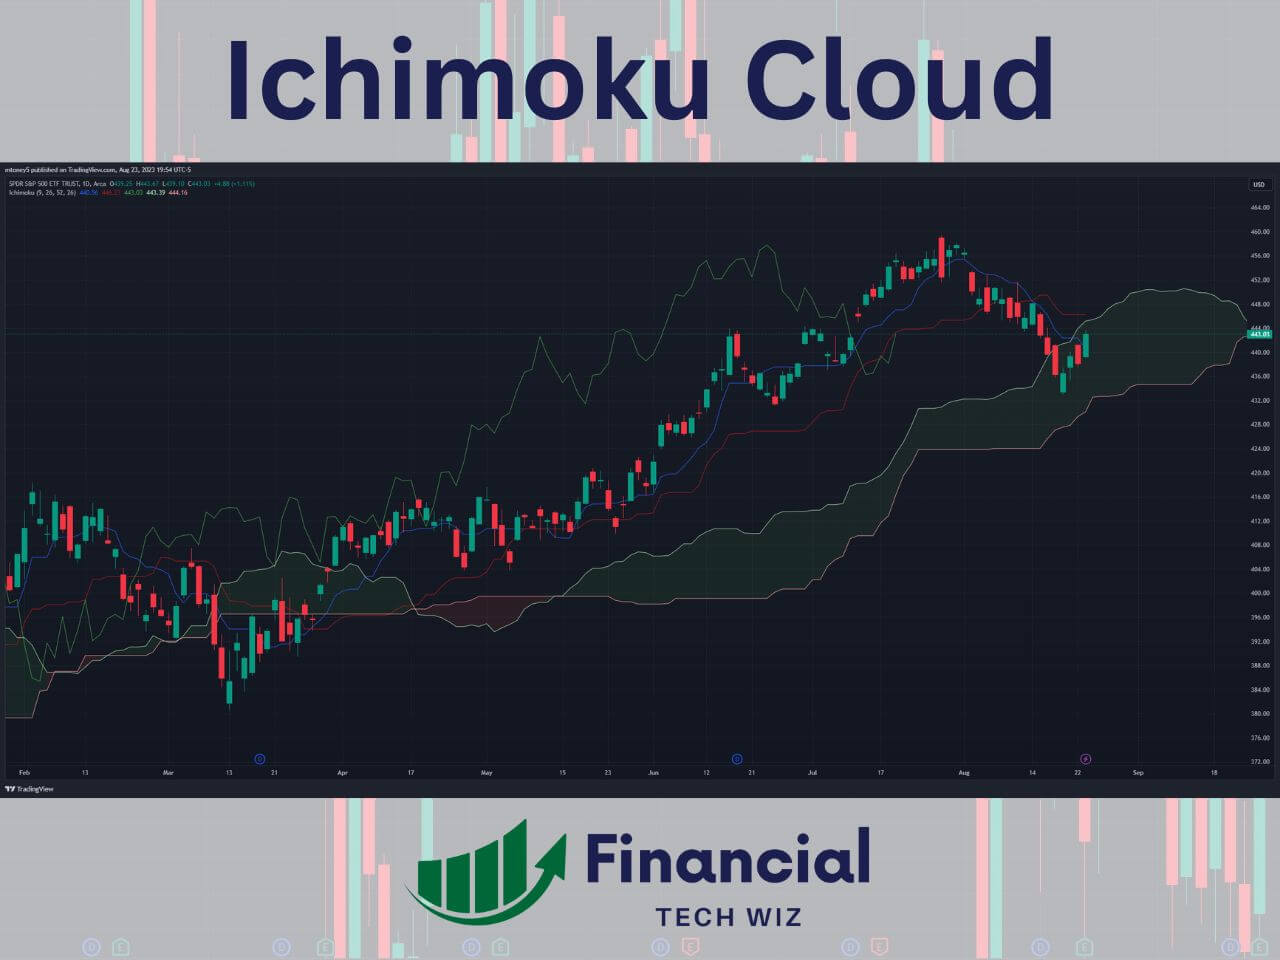 ichimoku cloud